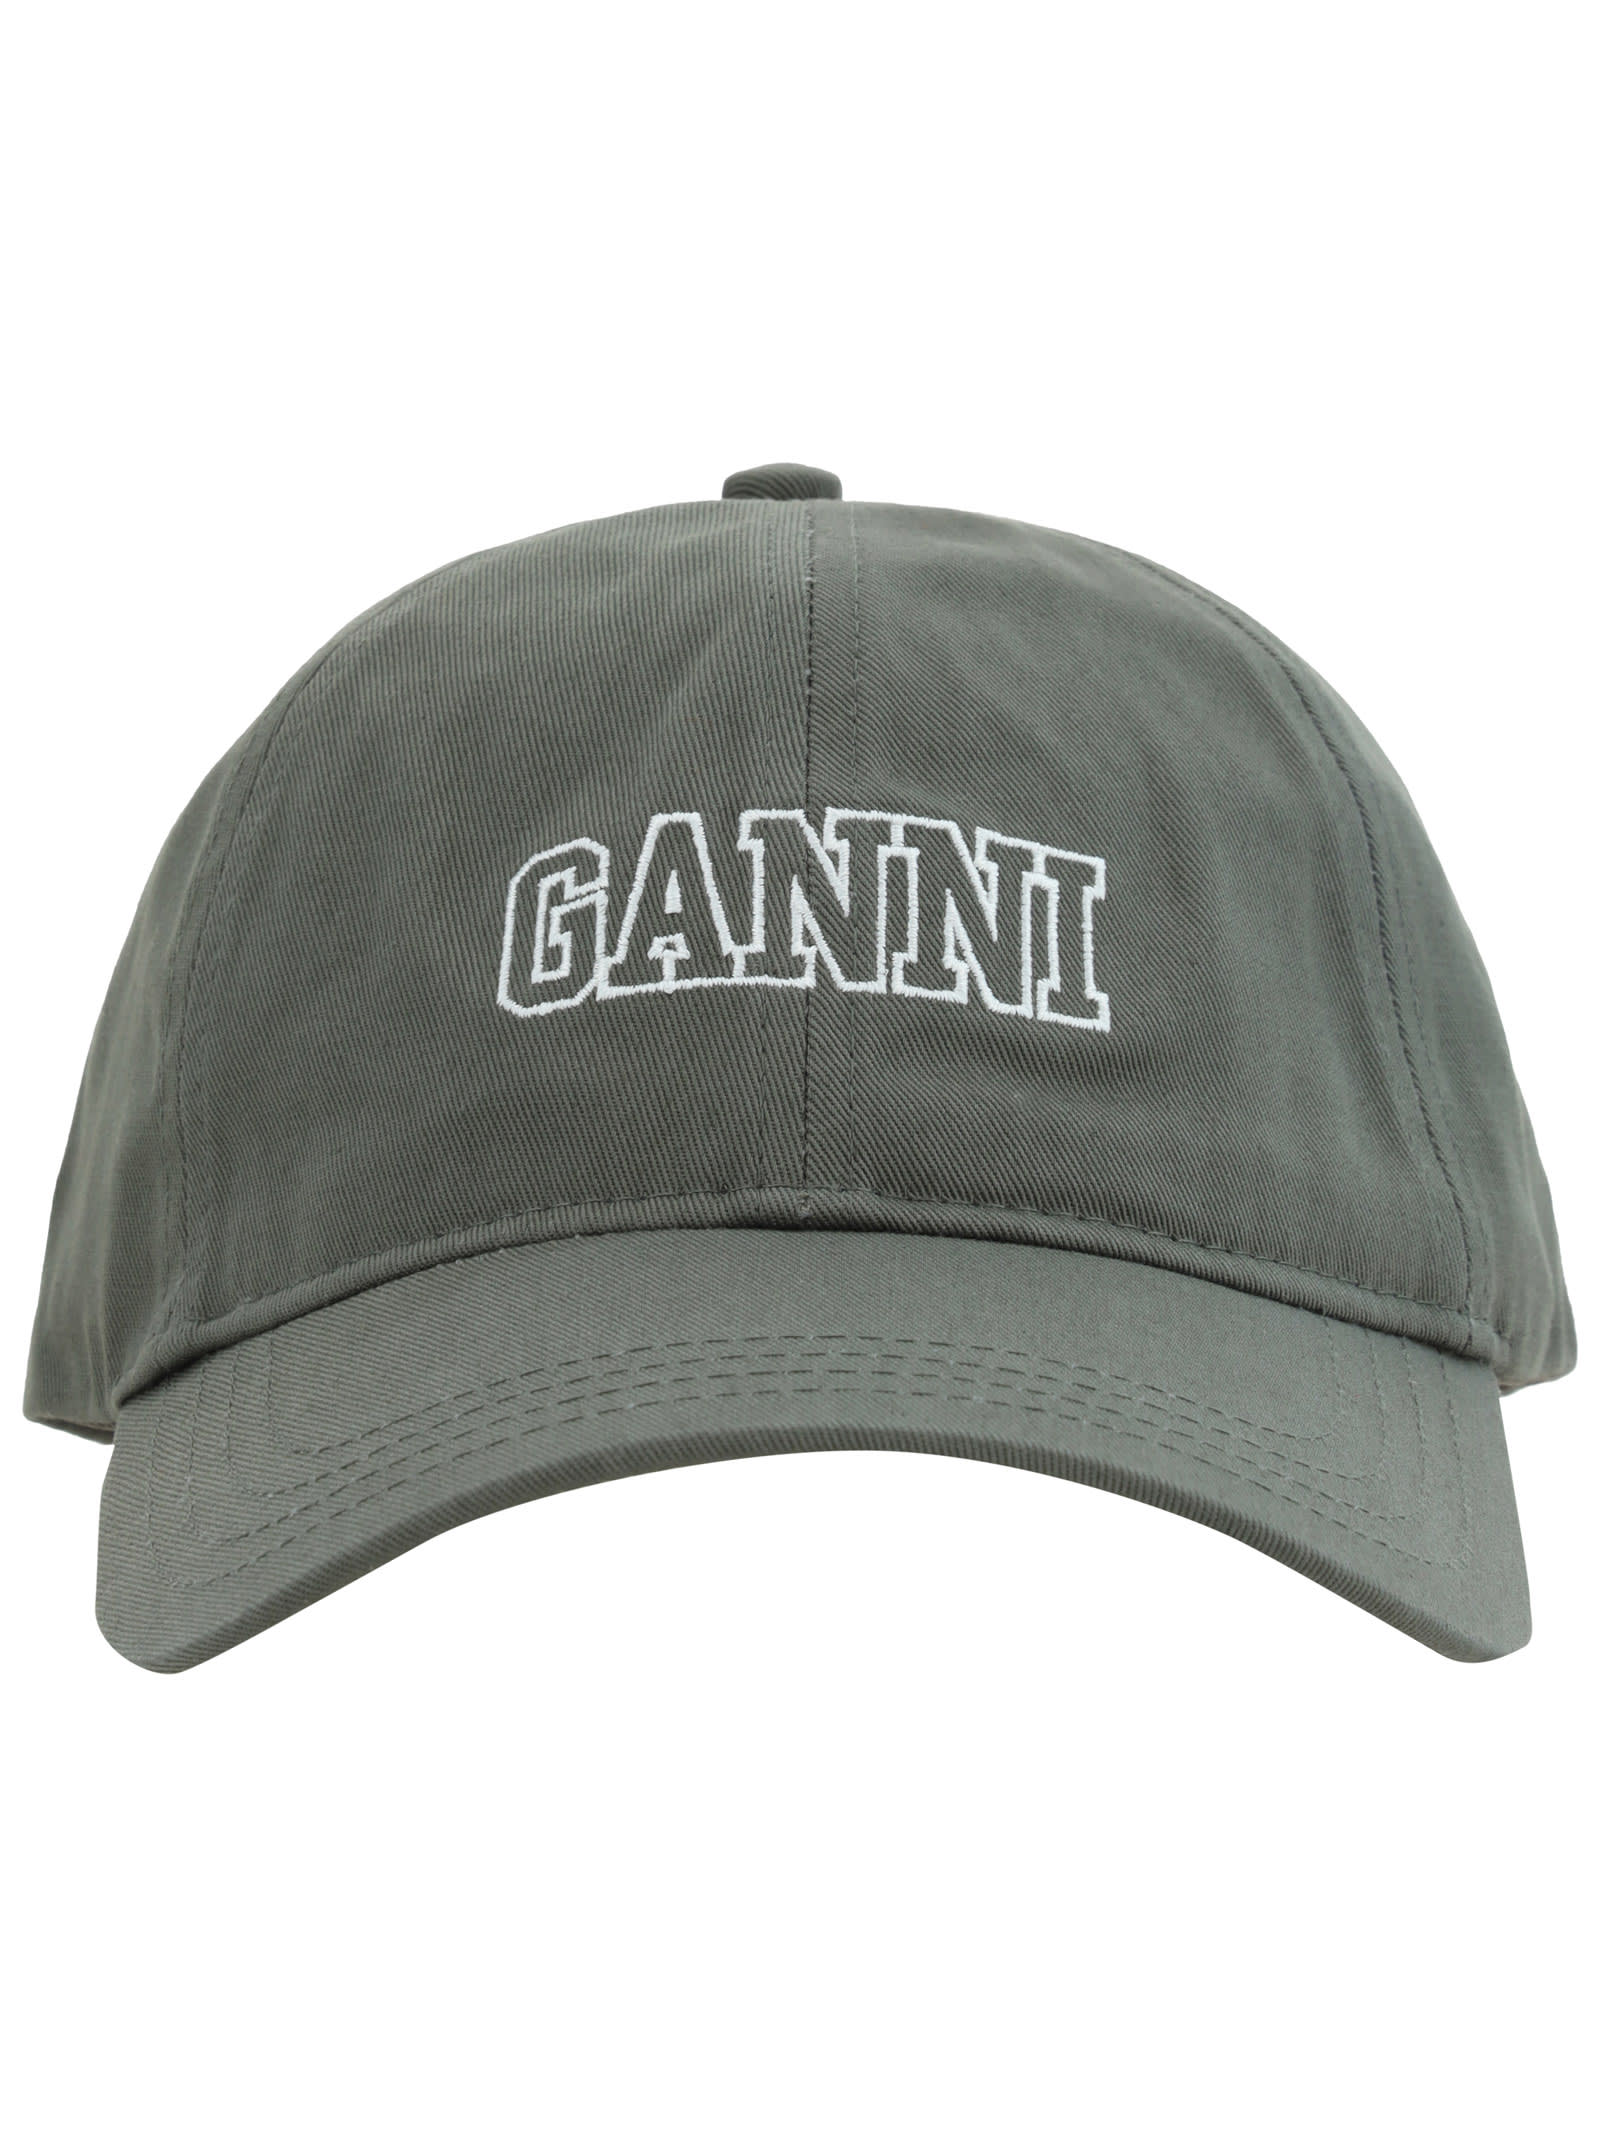 GANNI BASEBALL HAT